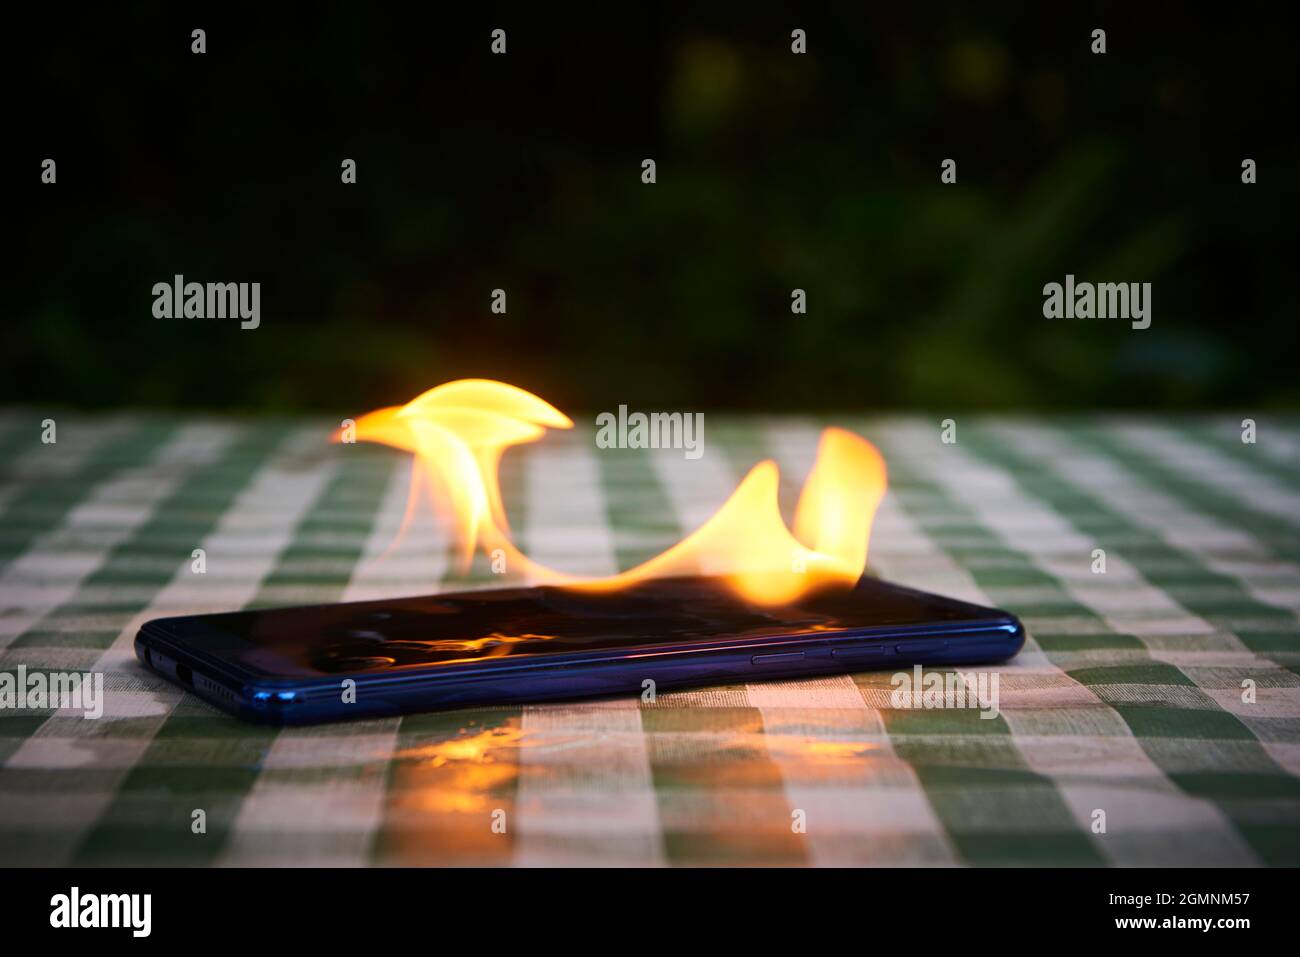 Handy explodiert und brennt. Explosion und Brand von Mobiltelefonen. Gefahr für Smartphones durch Übernutzung oder schlechte Herstellung. Überhitzung wird verbrannt Stockfoto